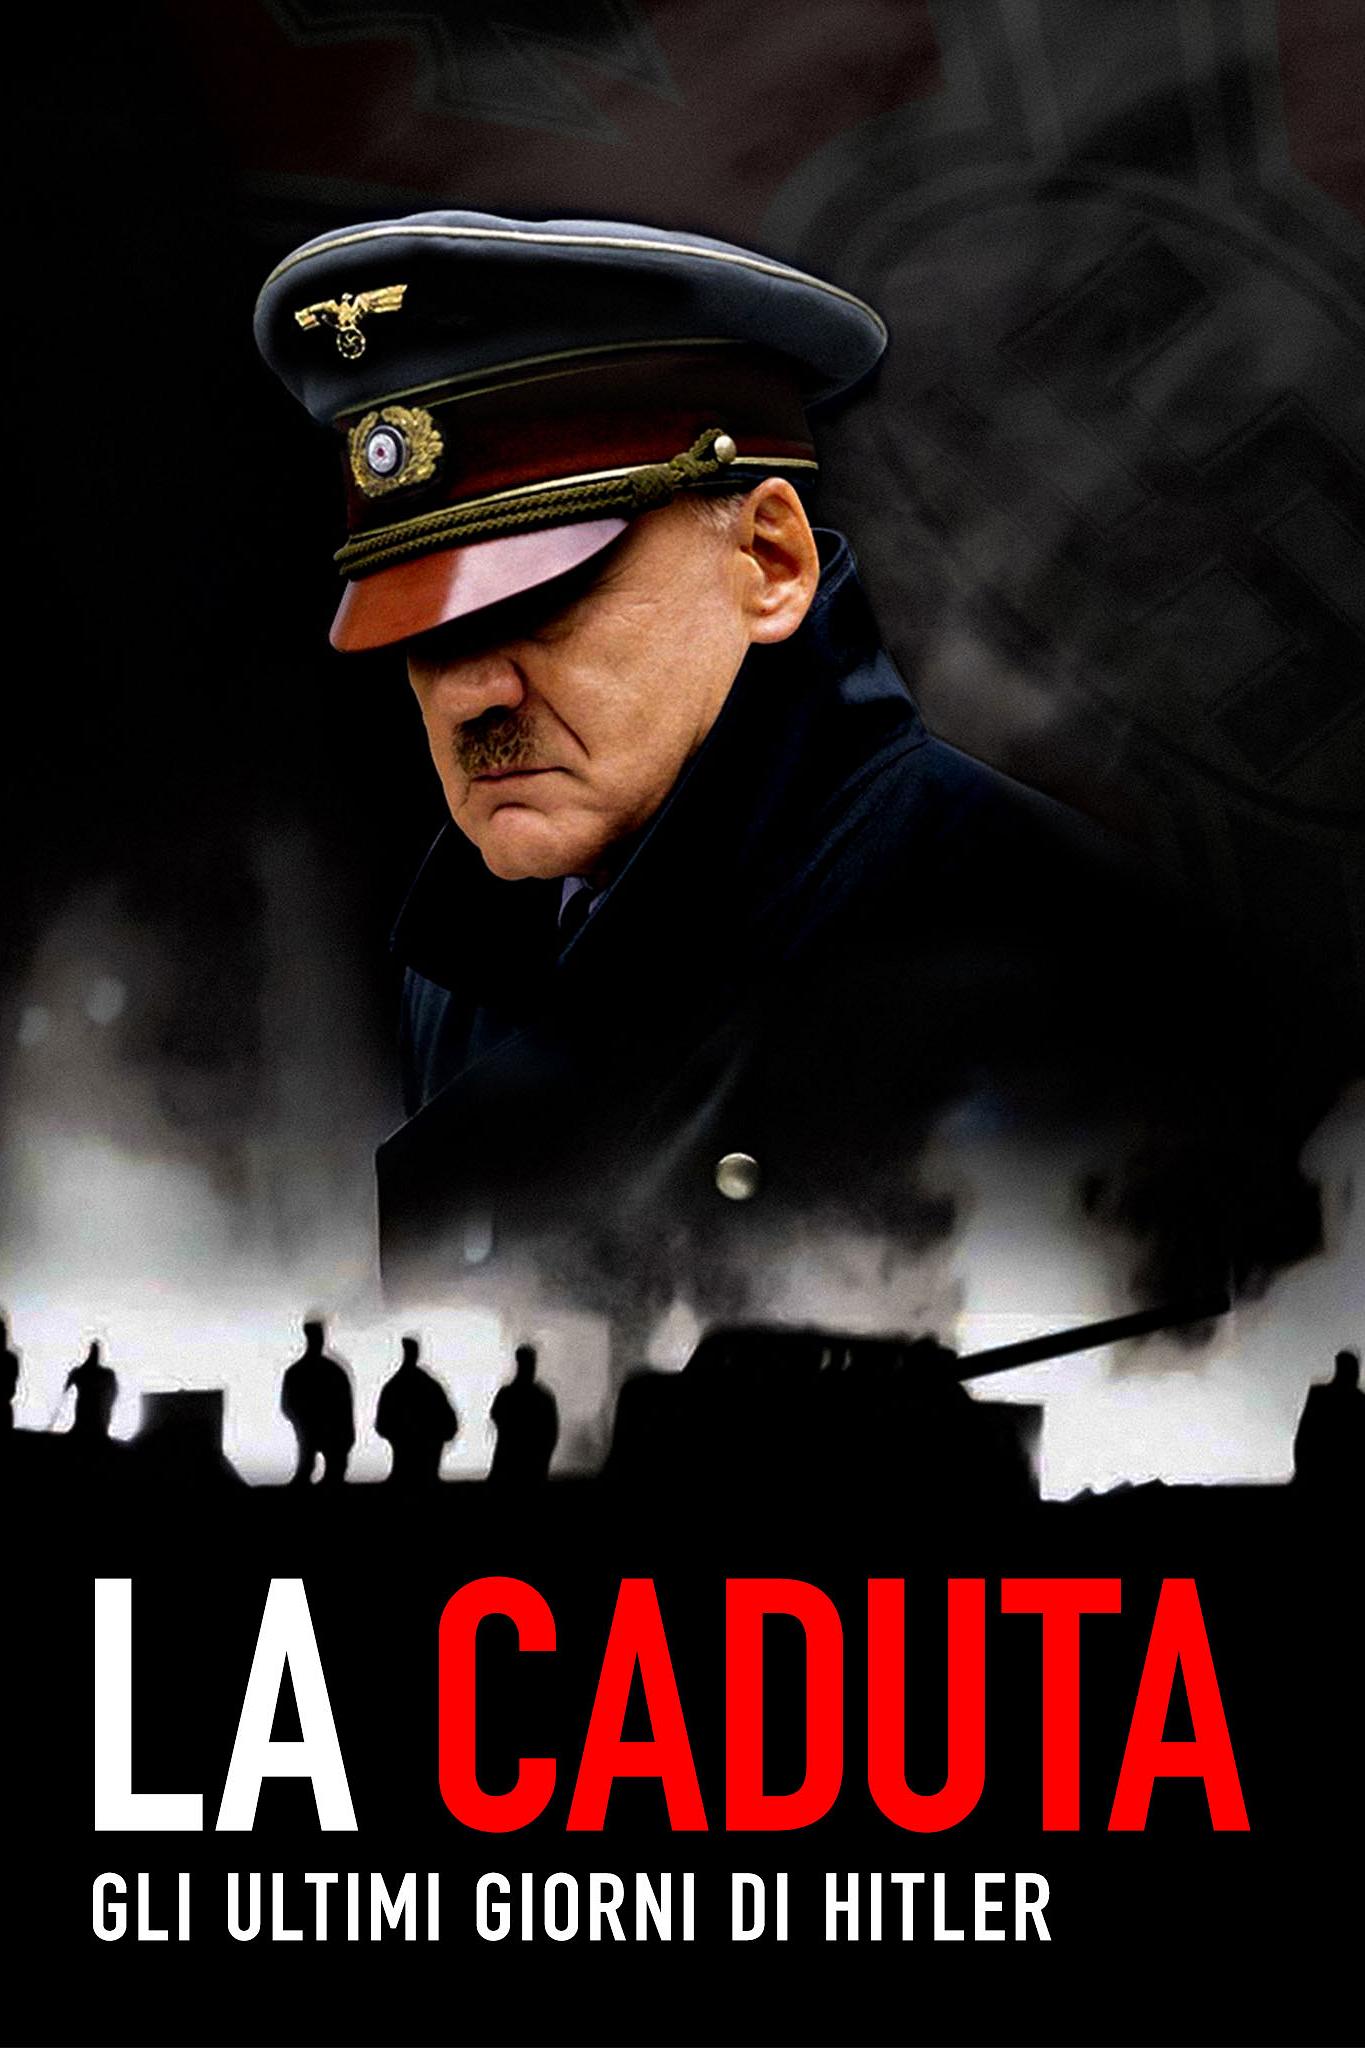 La caduta – Gli ultimi giorni di Hitler [HD] (2004)